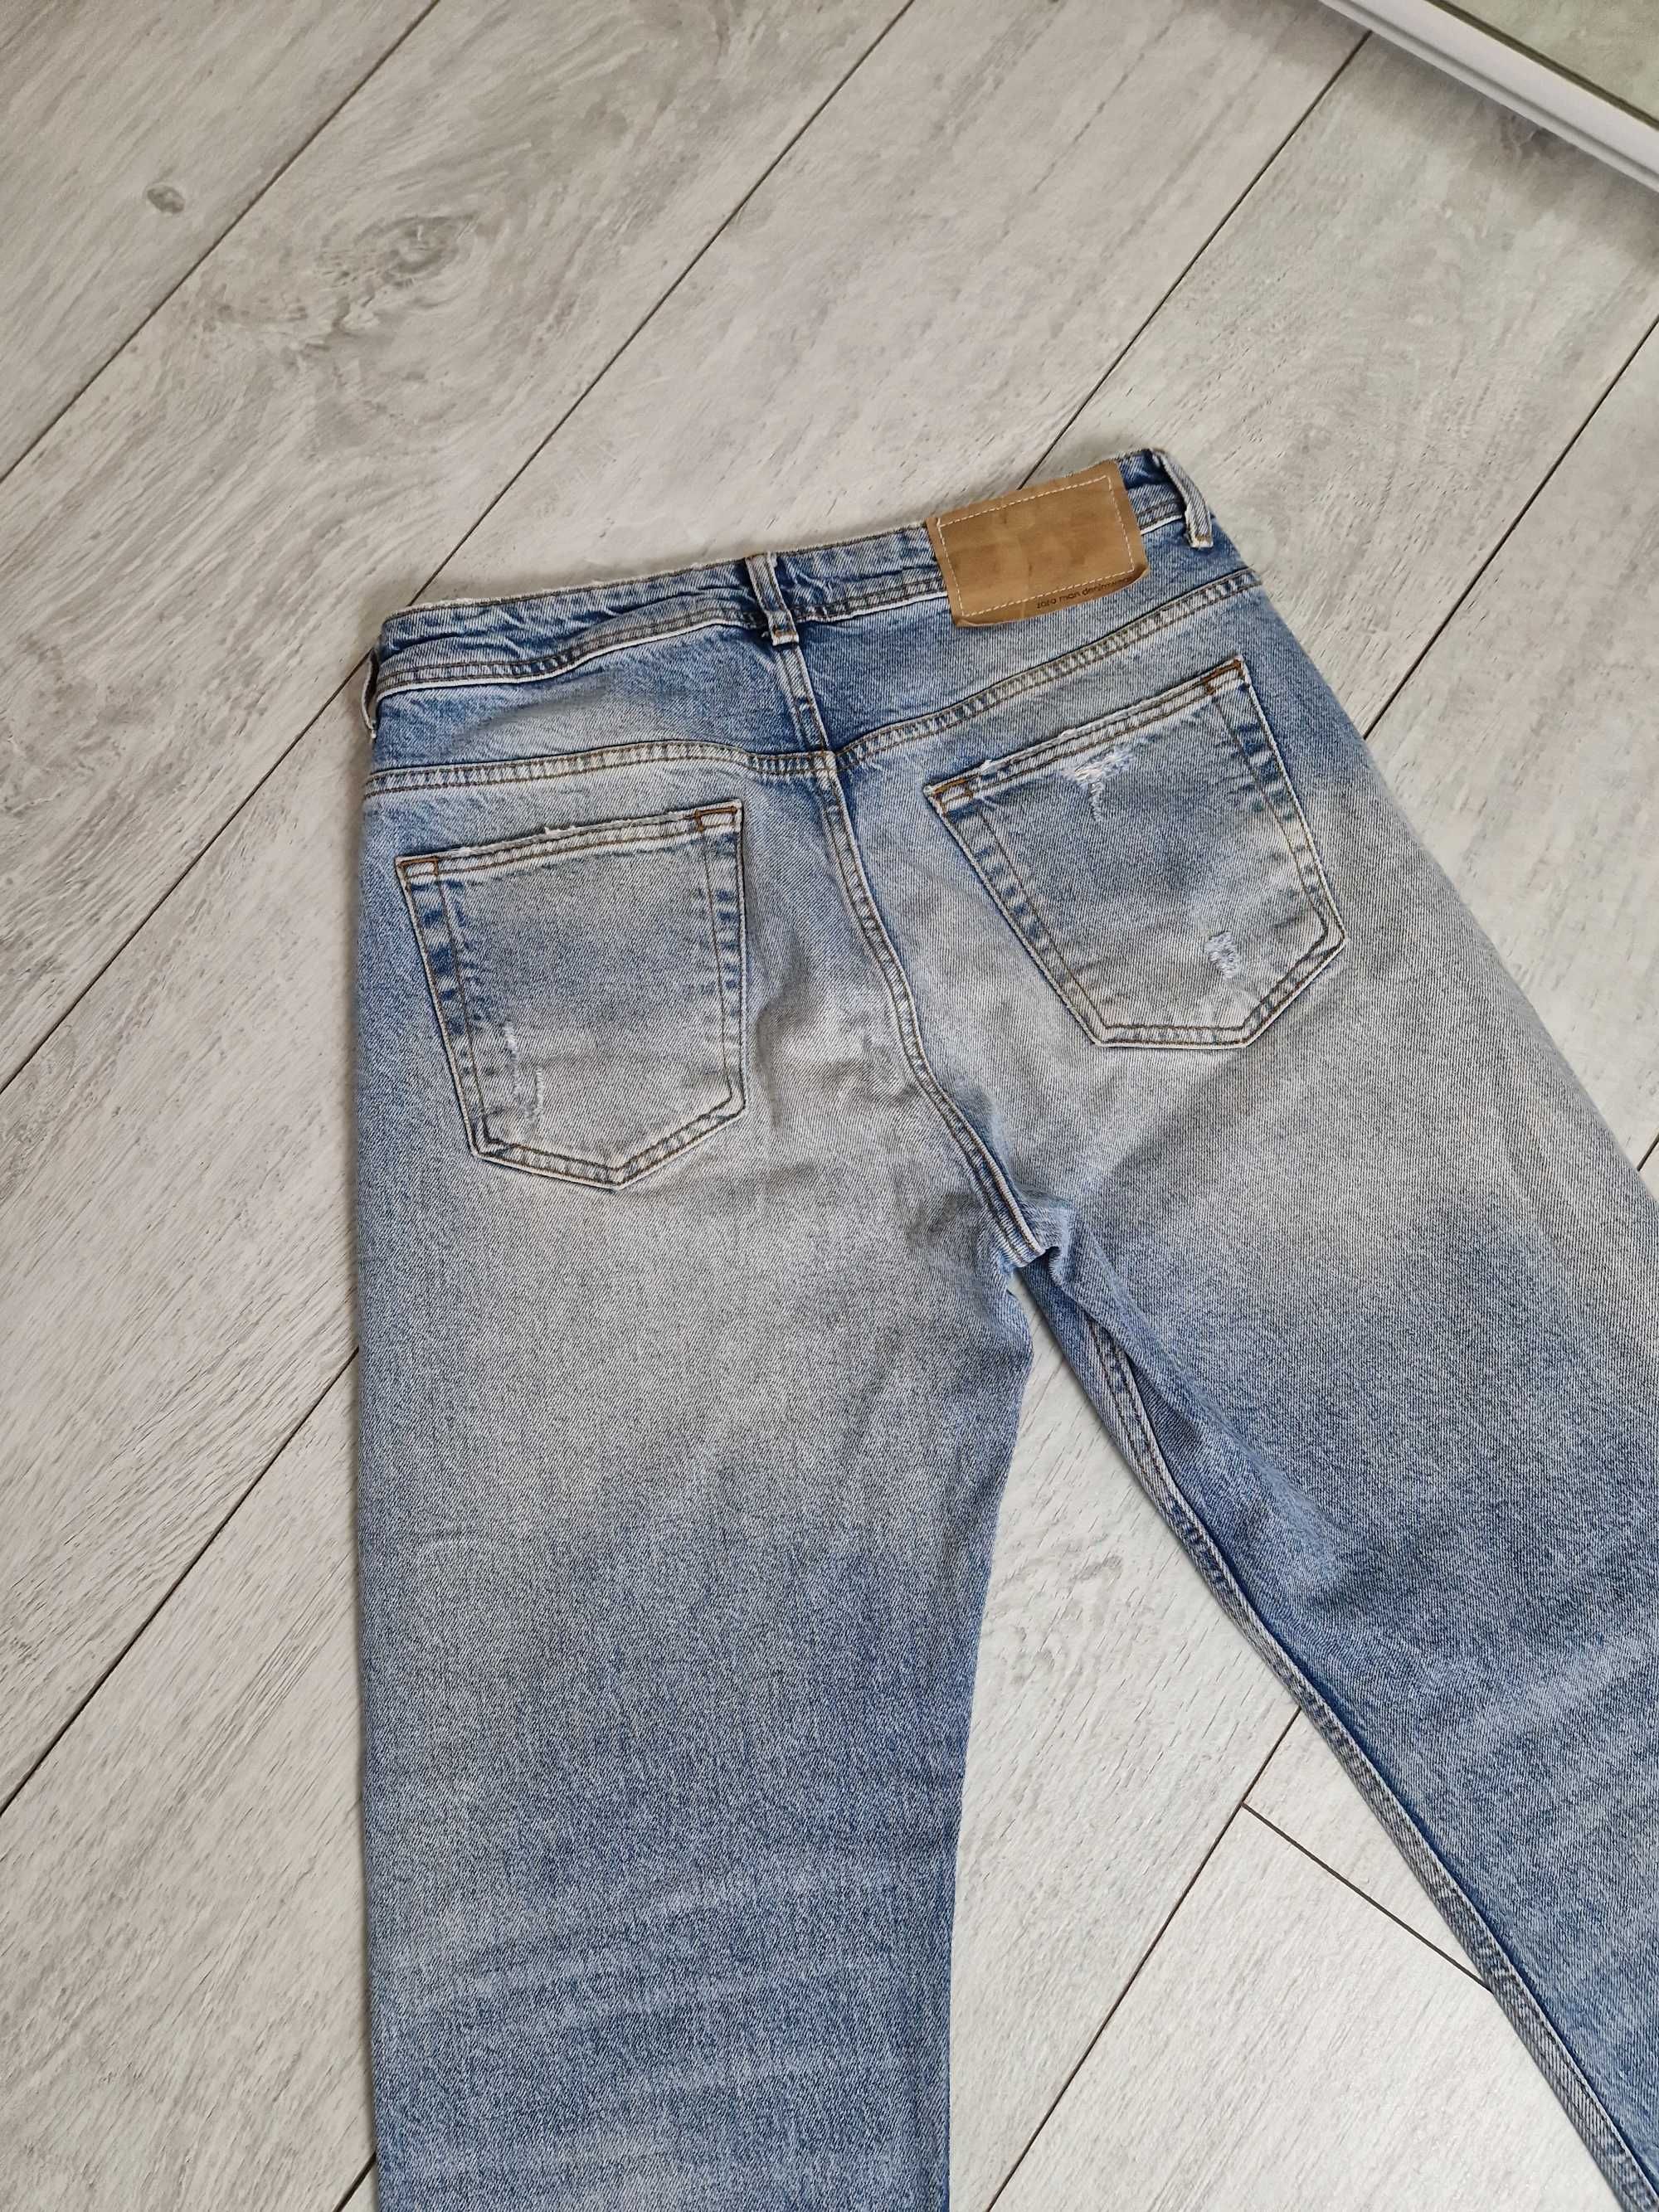 Zara męskie spodnie jeansowe dżinsowe jeansy dżinsy 38